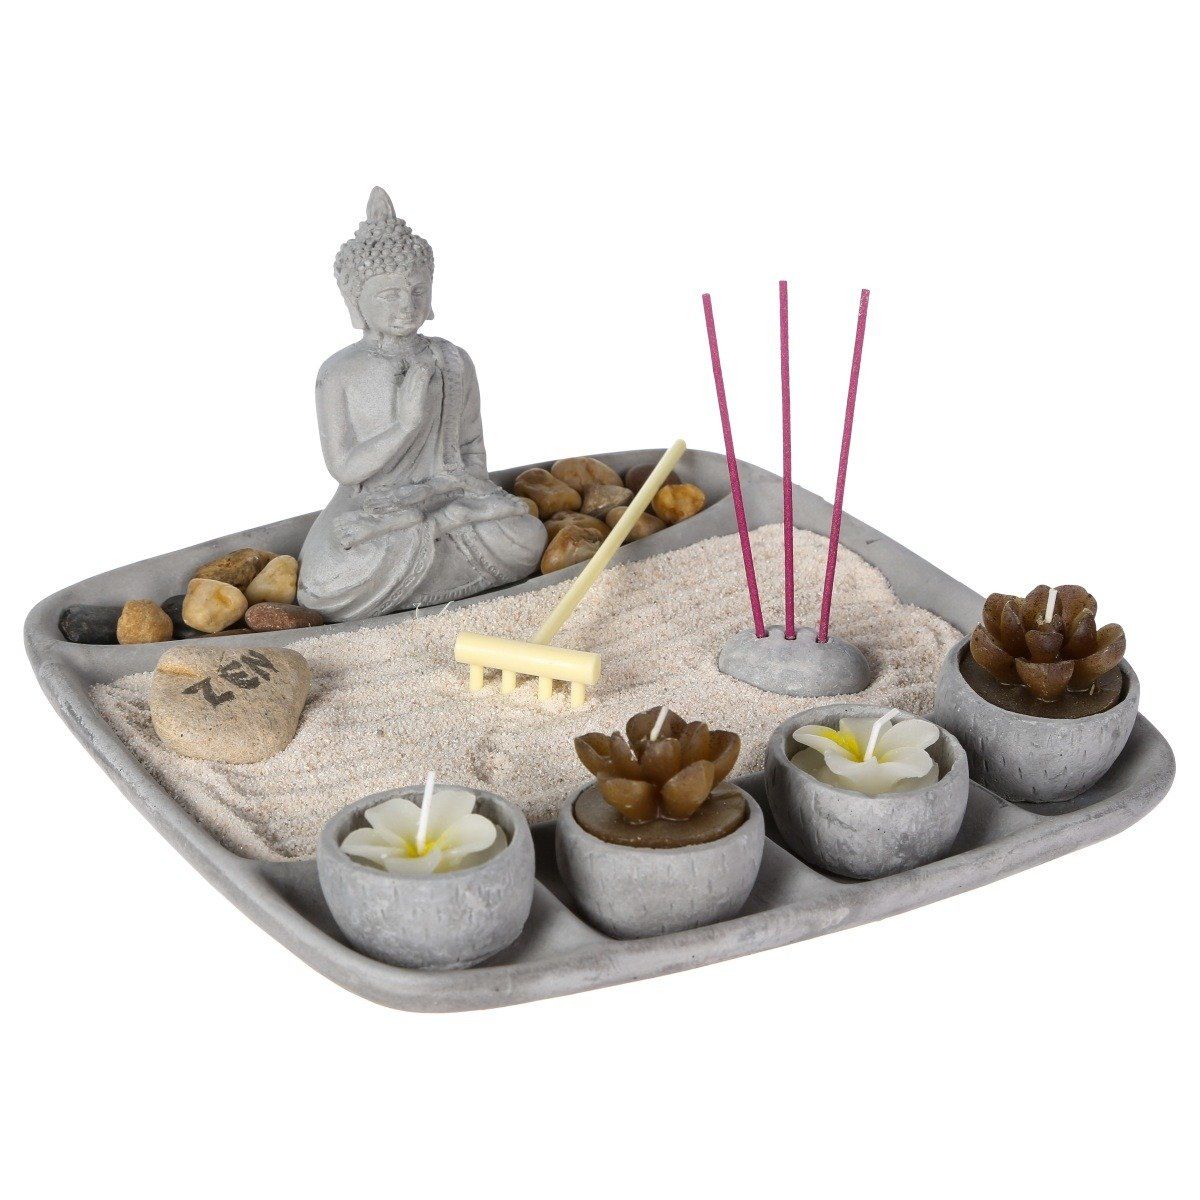 Atmosphera Sada svíček a vonných tyčinek s postavou buddhy, 24 x 23 cm, šedá. - EMAKO.CZ s.r.o.